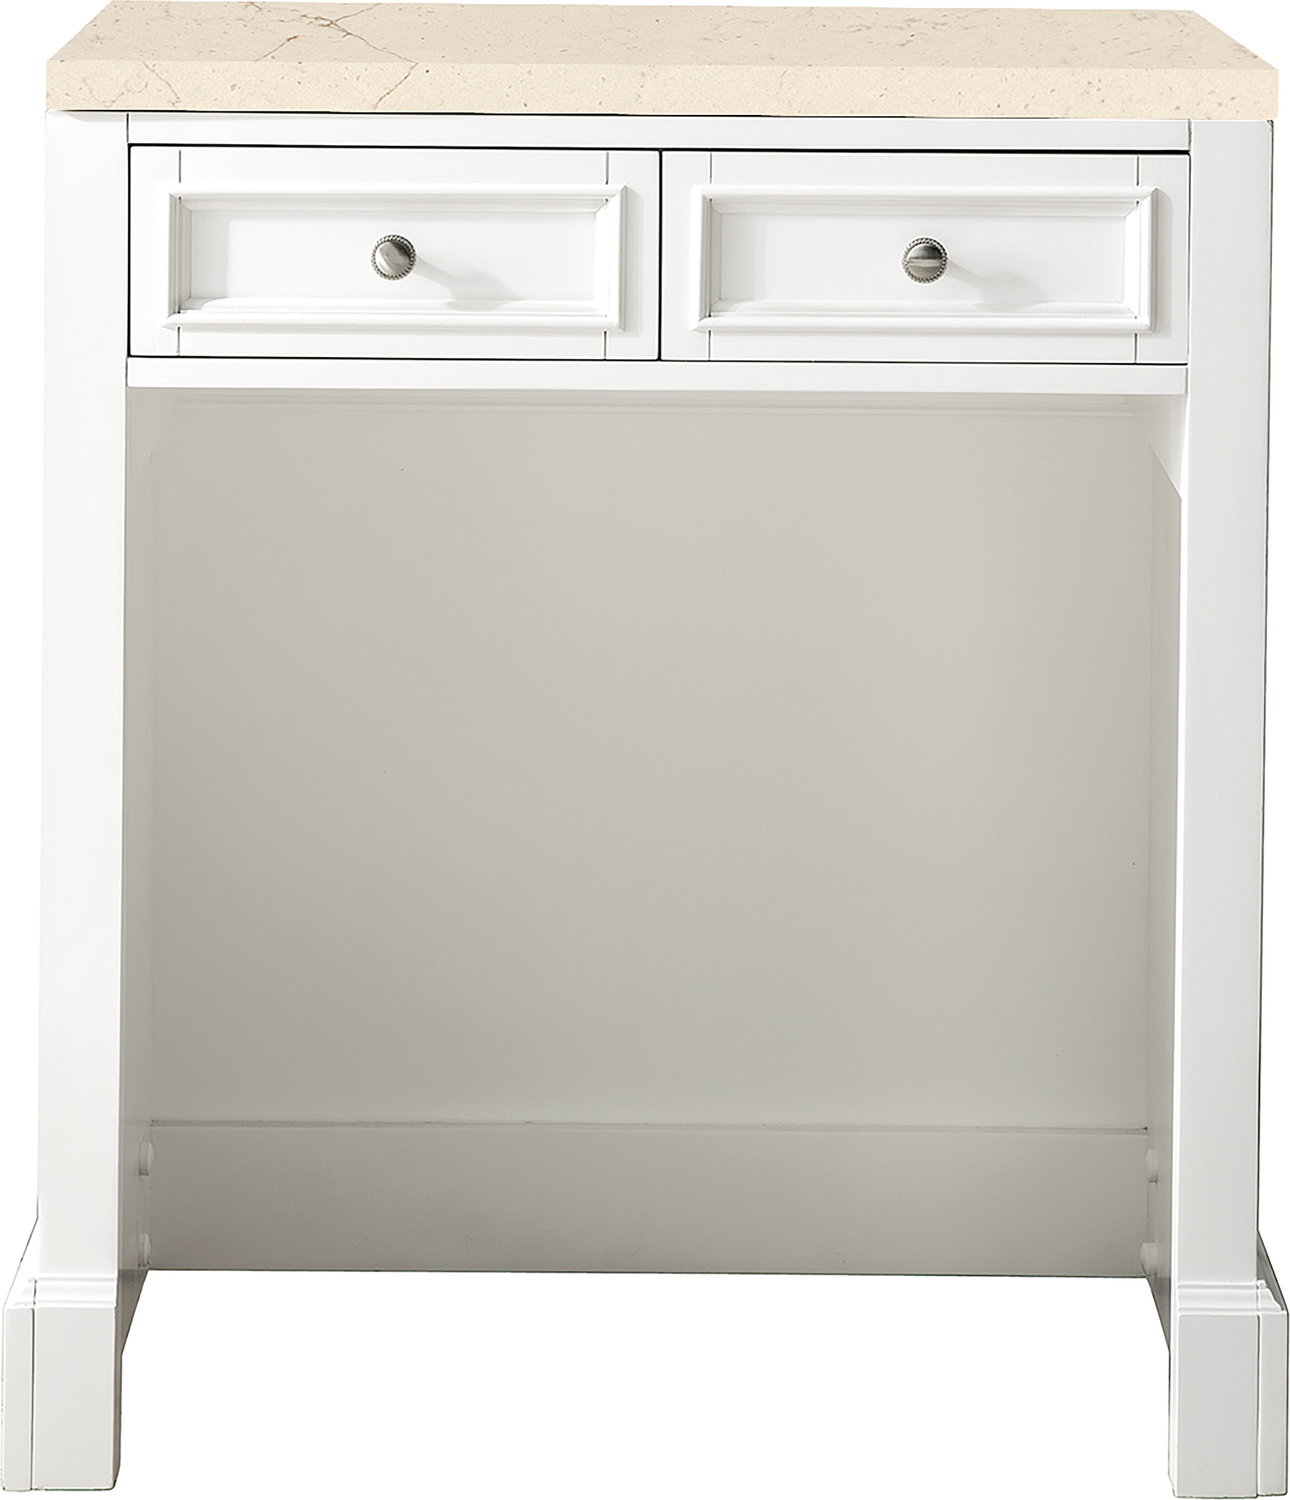  James Martin Countertop Unit Storage Cabinets Bright White